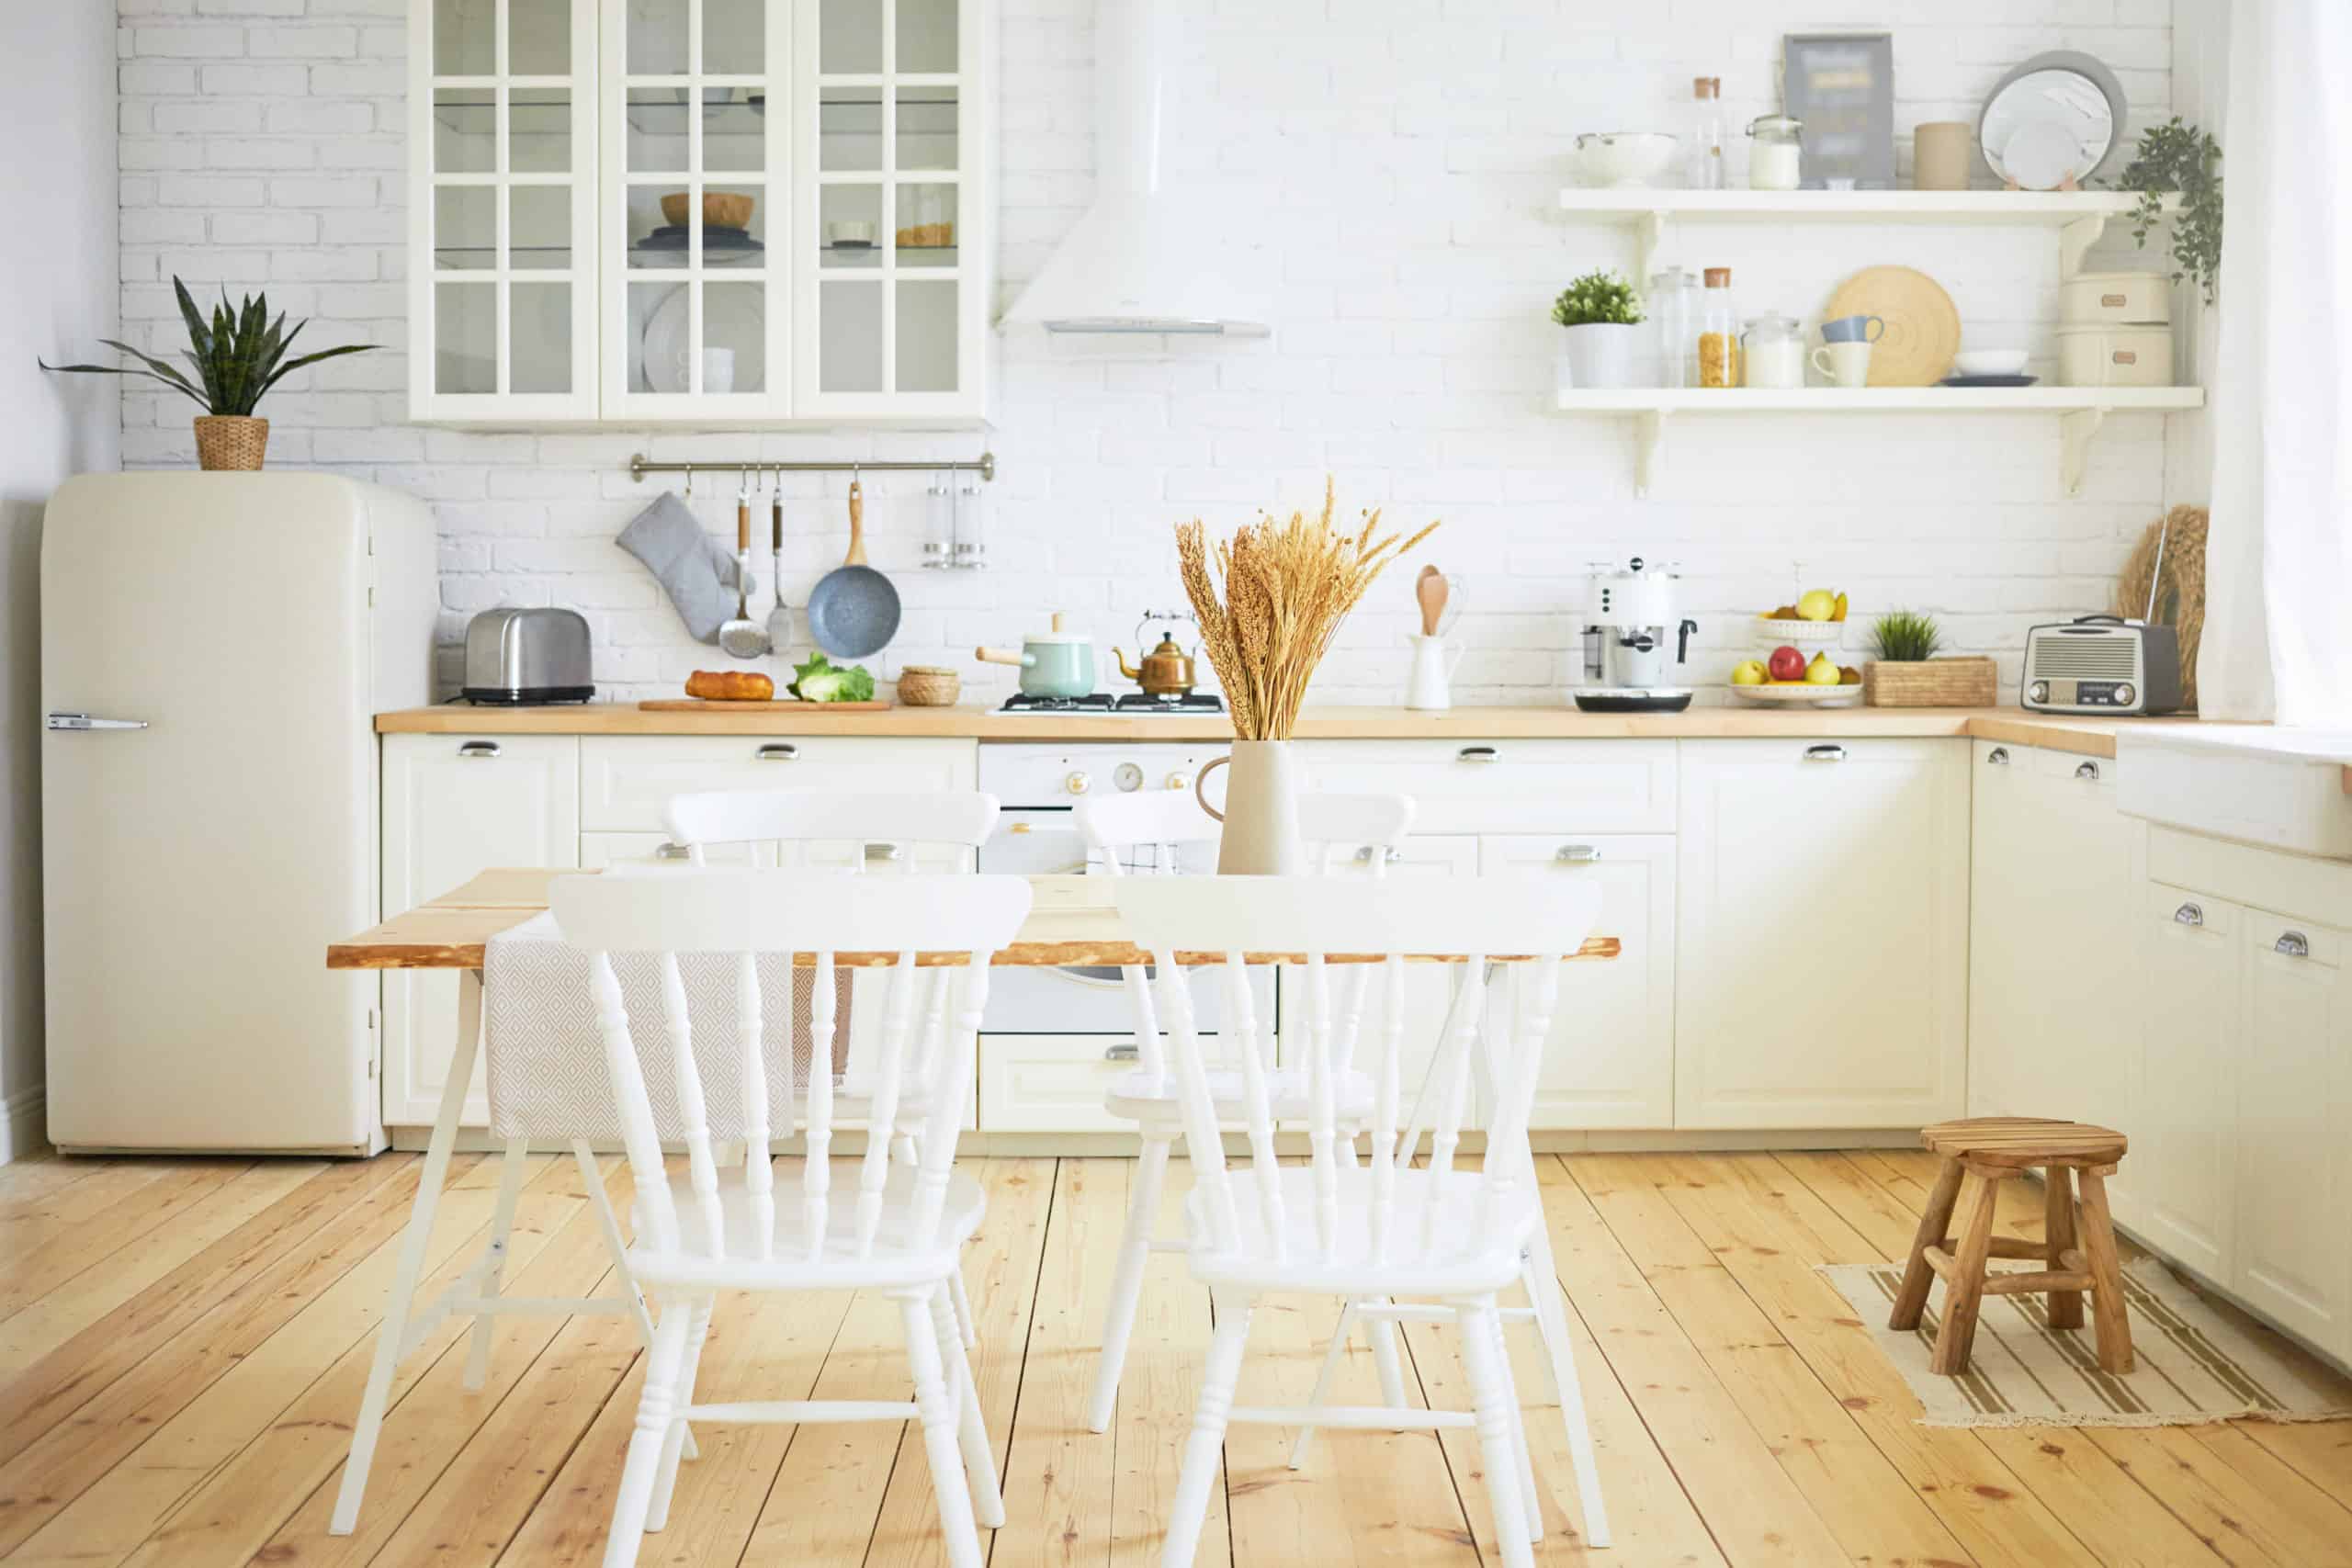 במטבחים קטנים מעוצבים, אם יש לכם דלתות או קירות תוחמים בין חללי הבית סמוך למטבח, למה שלא תעשו אותם מזכוכית?